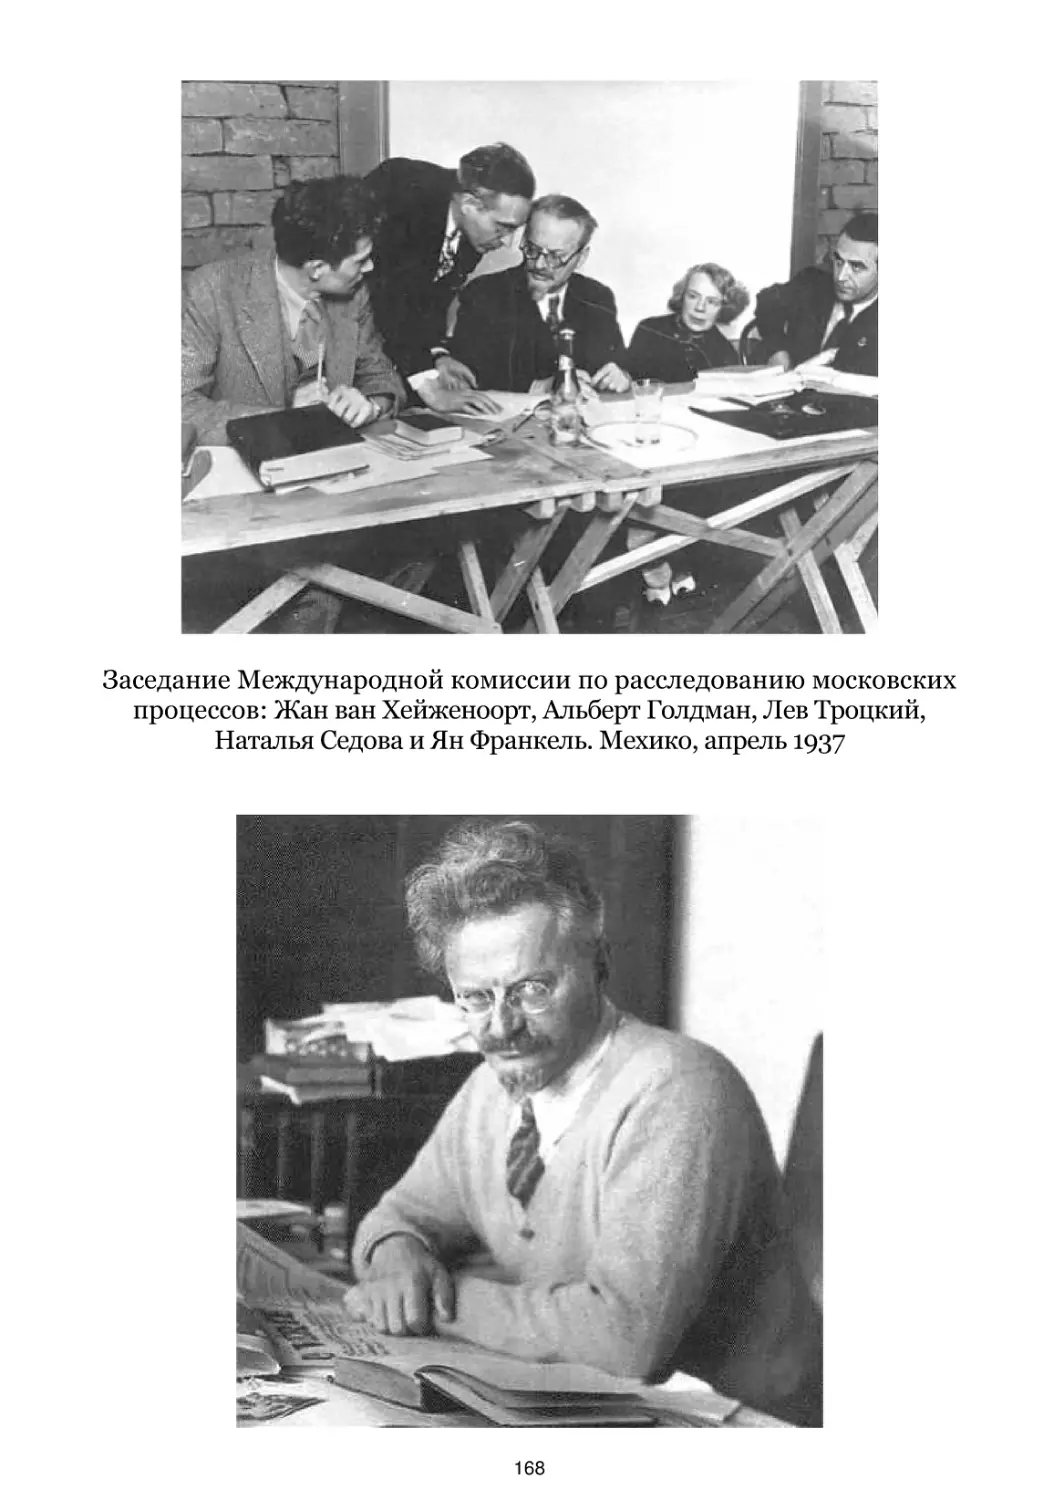 Заседание Международной комиссии по расследованию московских процессов. Мехико, апрель 1937